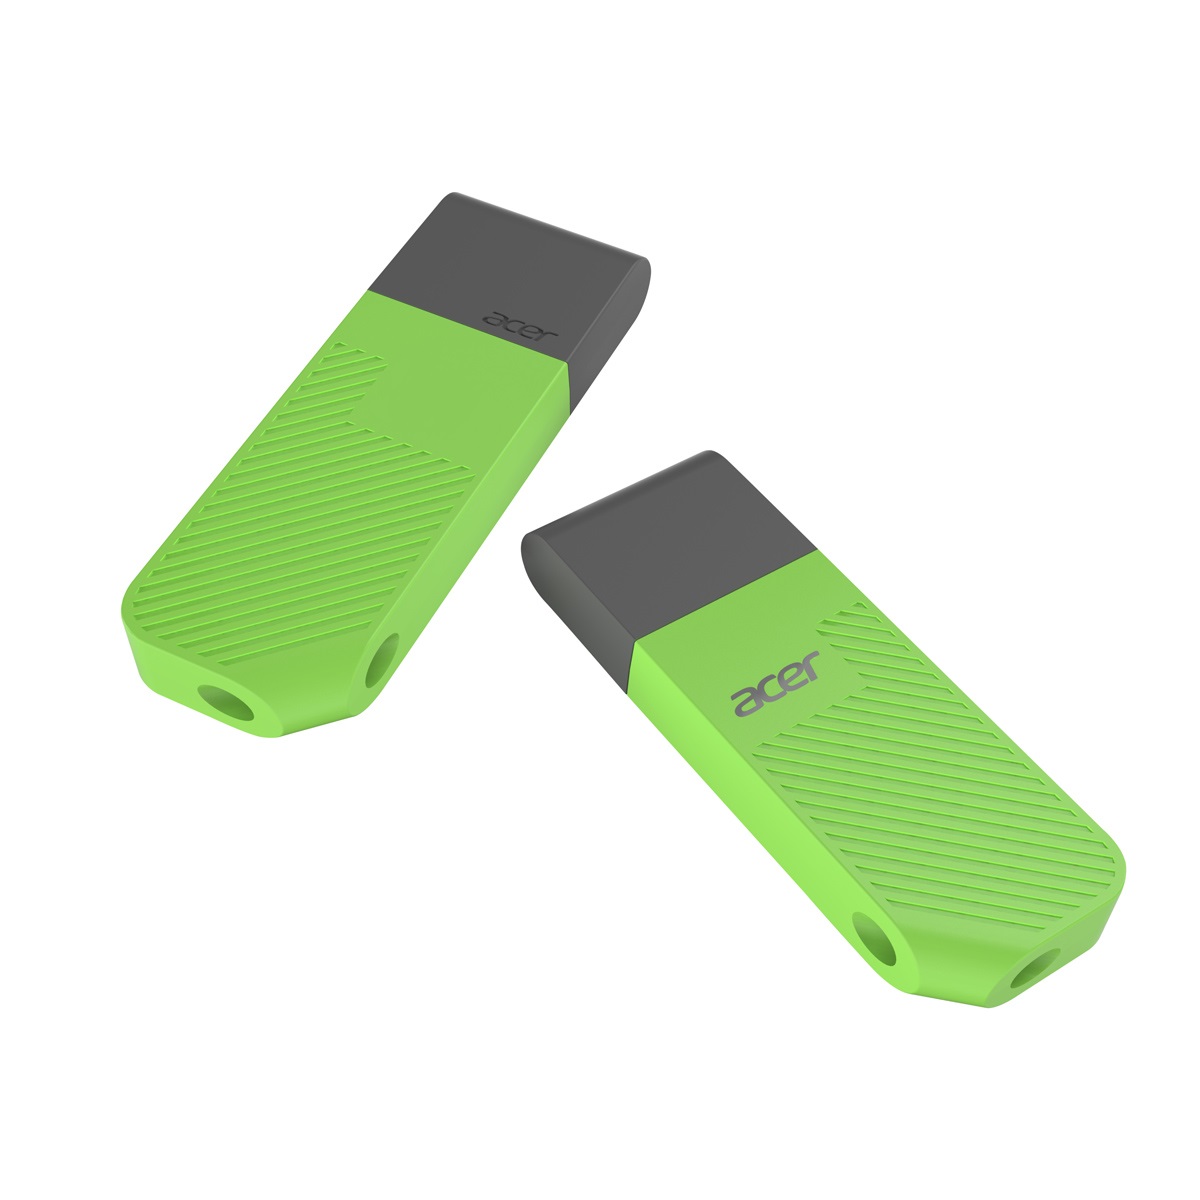 USB ACER UP300 512GB Green (UP300-512GB-GR) USB 3.2 Gen 1